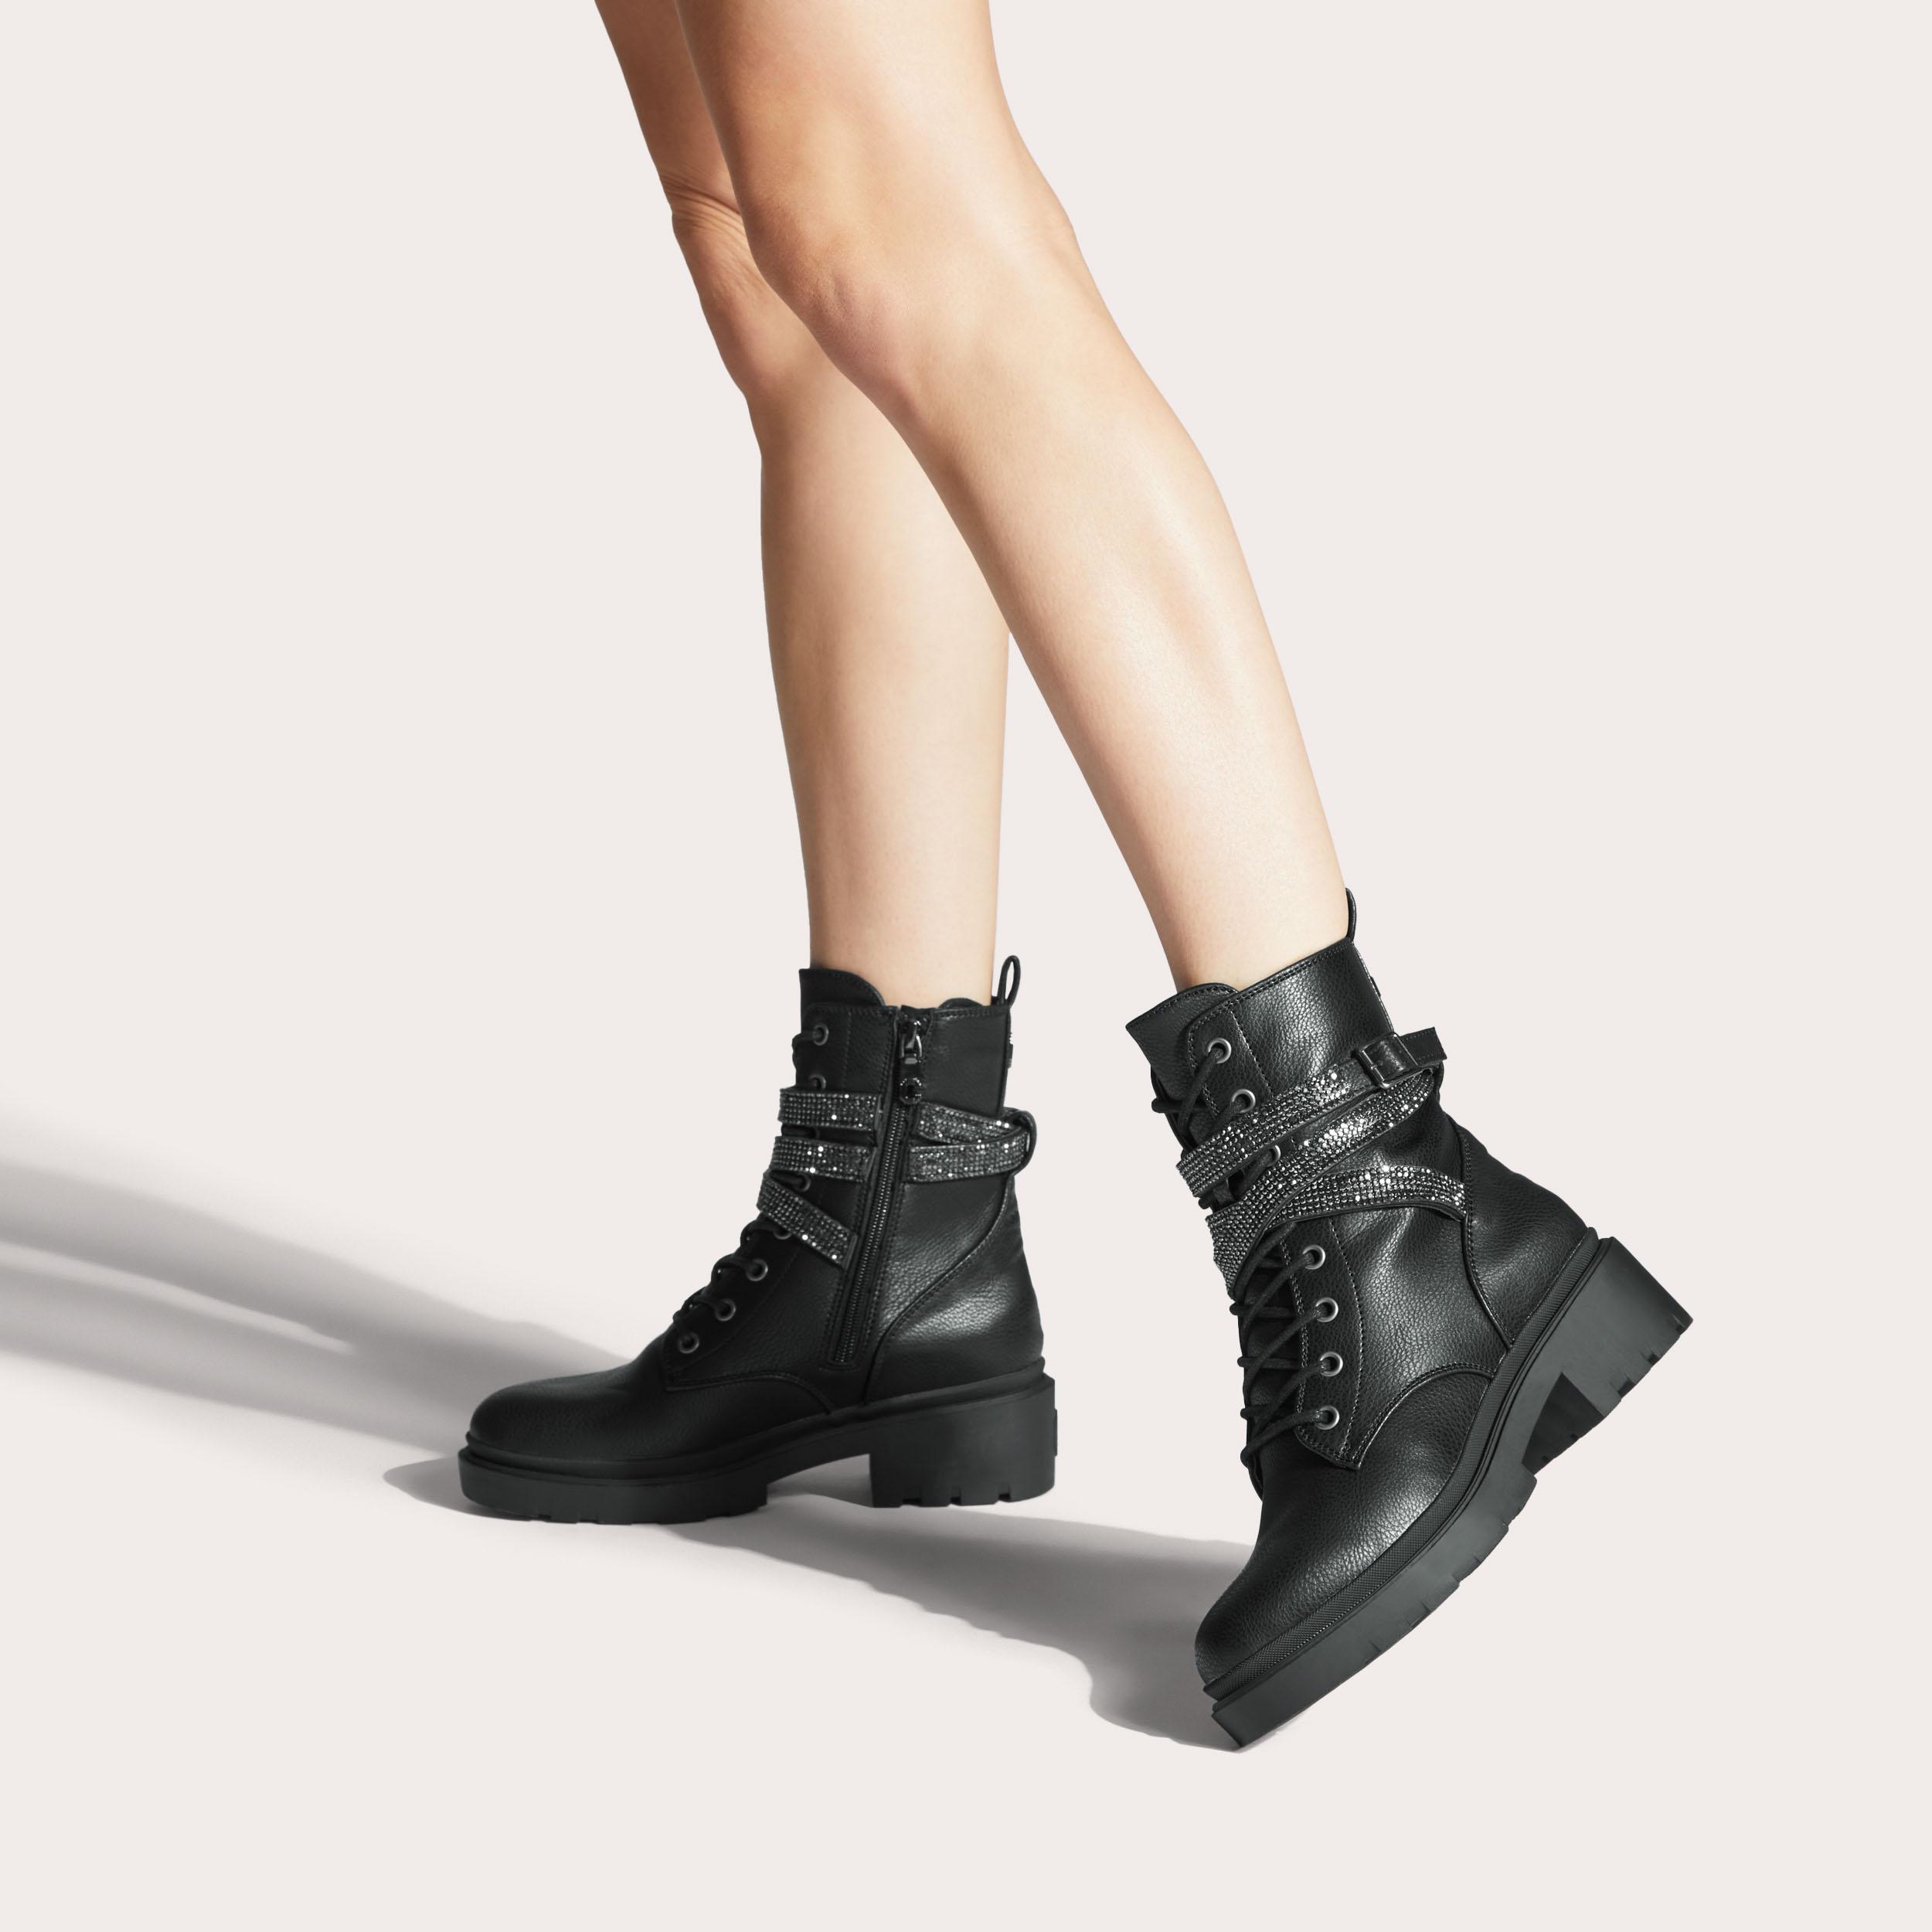 BOULDER EMBELLISHED Black Ankle Boots by CARVELA